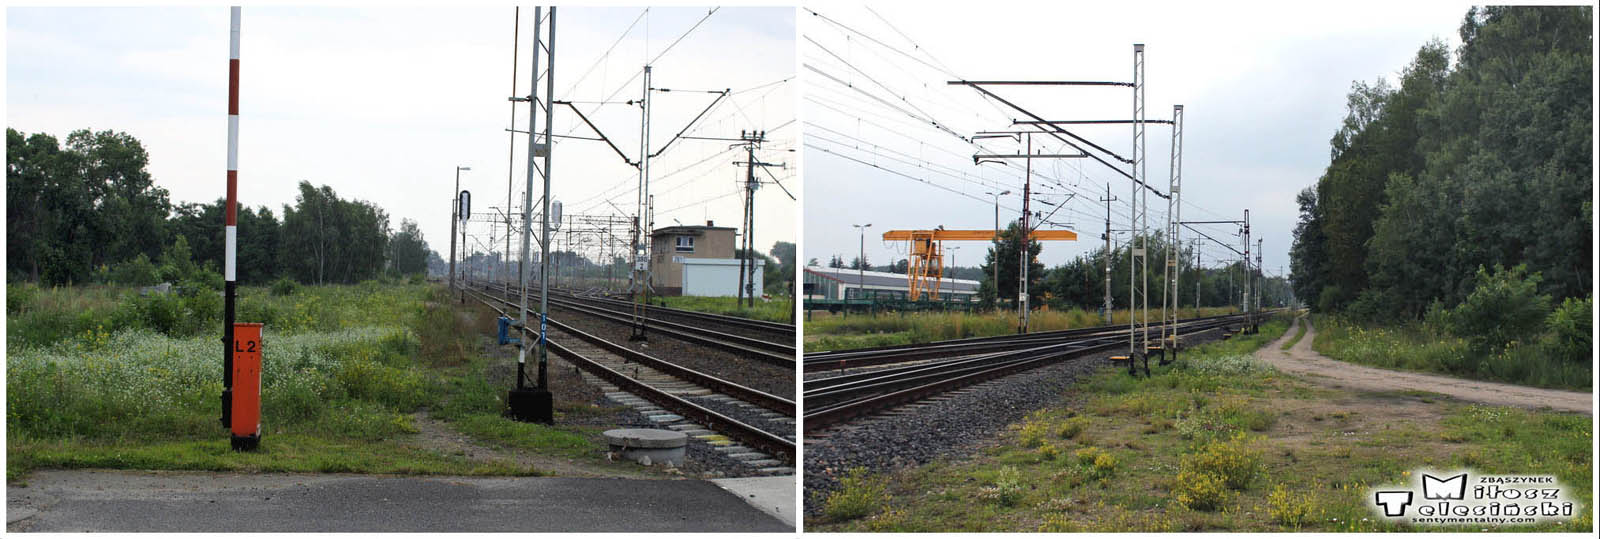 Z lewej strony zdjęcie, ukazujące stary tor do Międzyrzecza, odchodzący od stacji Zbąszyń. Po 1920 toku zakończono go kozłem oporowym. Wjazd na pozostałości po peronach kierunku Międzyrzeckiego, jest przybliżony na zdjęciach zamieszczonych powyżej. Na zdjęciu po prawej stronie, widzimy poszerzenie, sprowadzone do drogi leśnej, jako pozostałość po pierwotnym połączeniu Zbąszyń – Międzyrzecz, czynnej w latach 1885 – 1920. Odległość ze stacji Zbąszyń do stacji Dąbrówka wynosiła 7.2 kilometra. Zdjęcie z dnia 10.07.2017. 